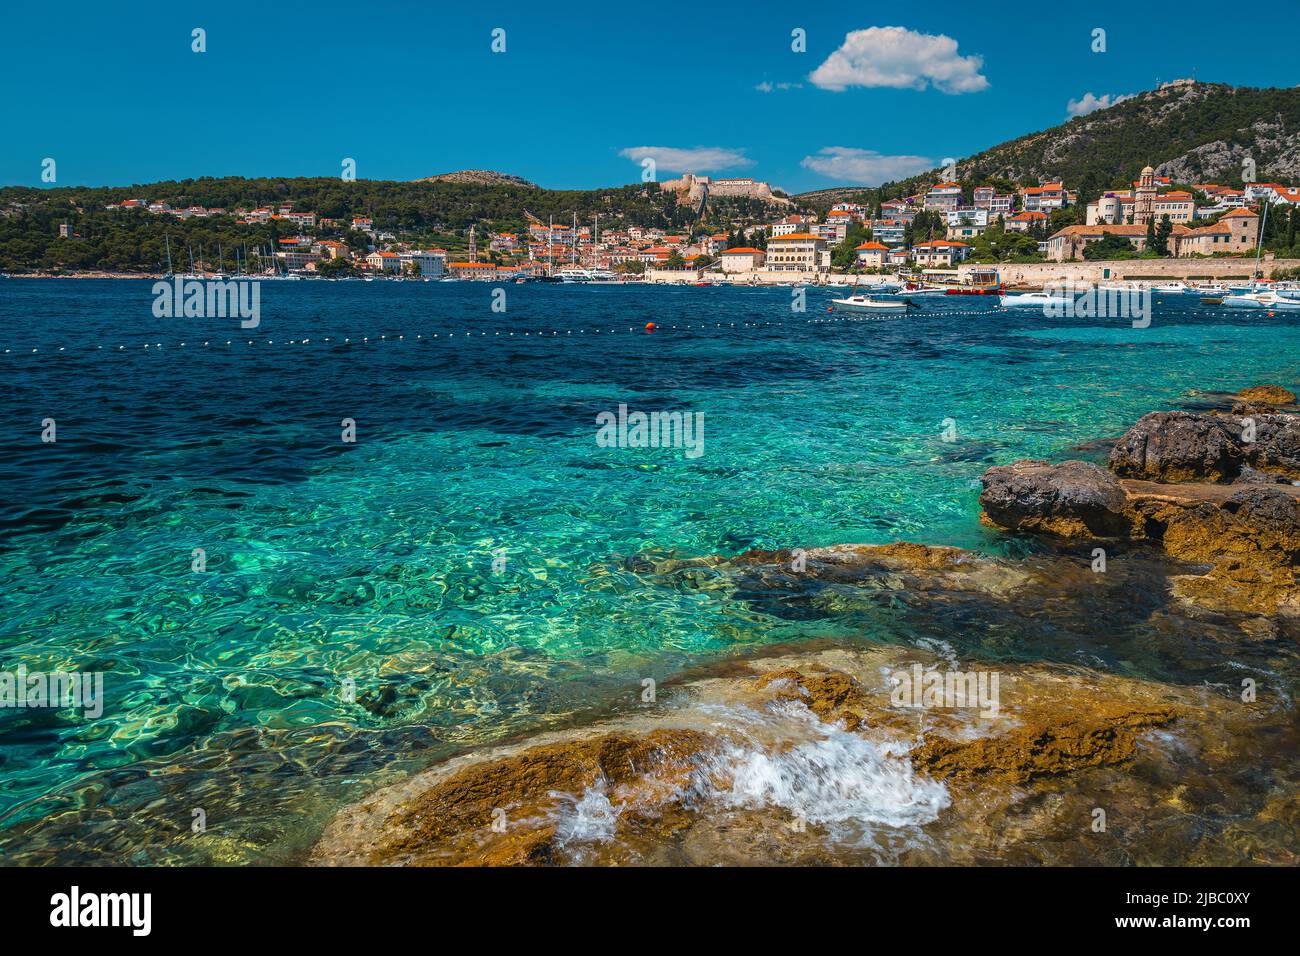 Famosa meta di viaggi e vacanze al mare. Bella spiaggia con costa rocciosa e pittoresca città di Hvar sullo sfondo, isola di Hvar, Dalmazia, Croa Foto Stock